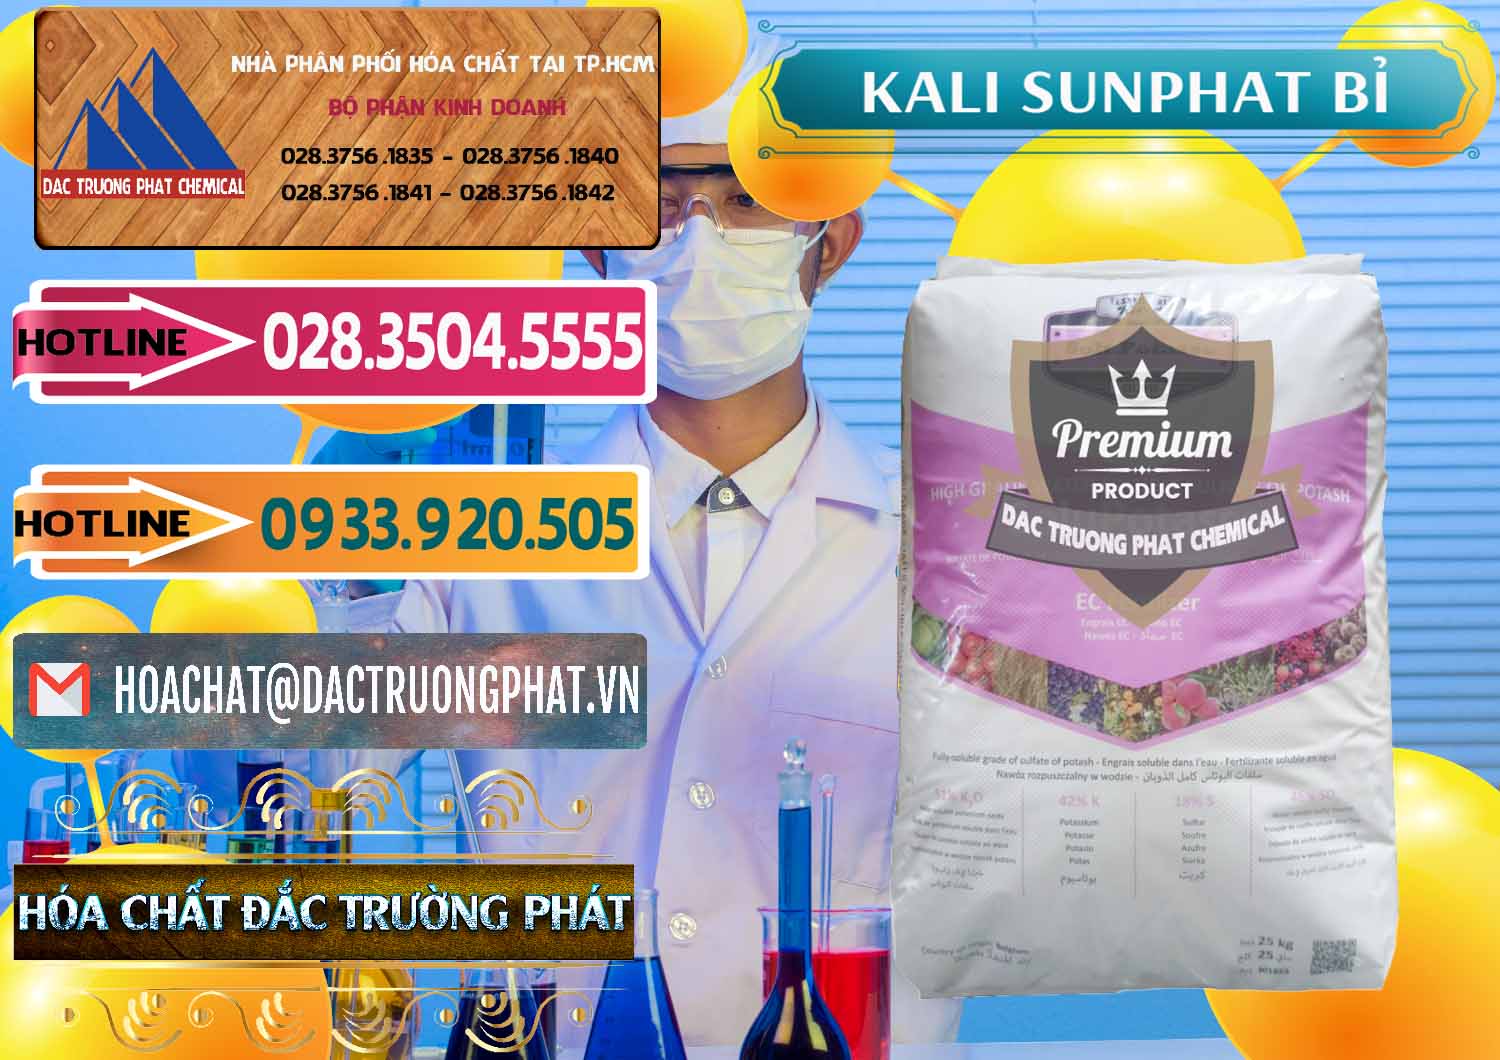 Chuyên bán ( cung ứng ) Kali Sunphat – K2SO4 Bỉ Belgium - 0406 - Cty cung cấp và phân phối hóa chất tại TP.HCM - dactruongphat.vn